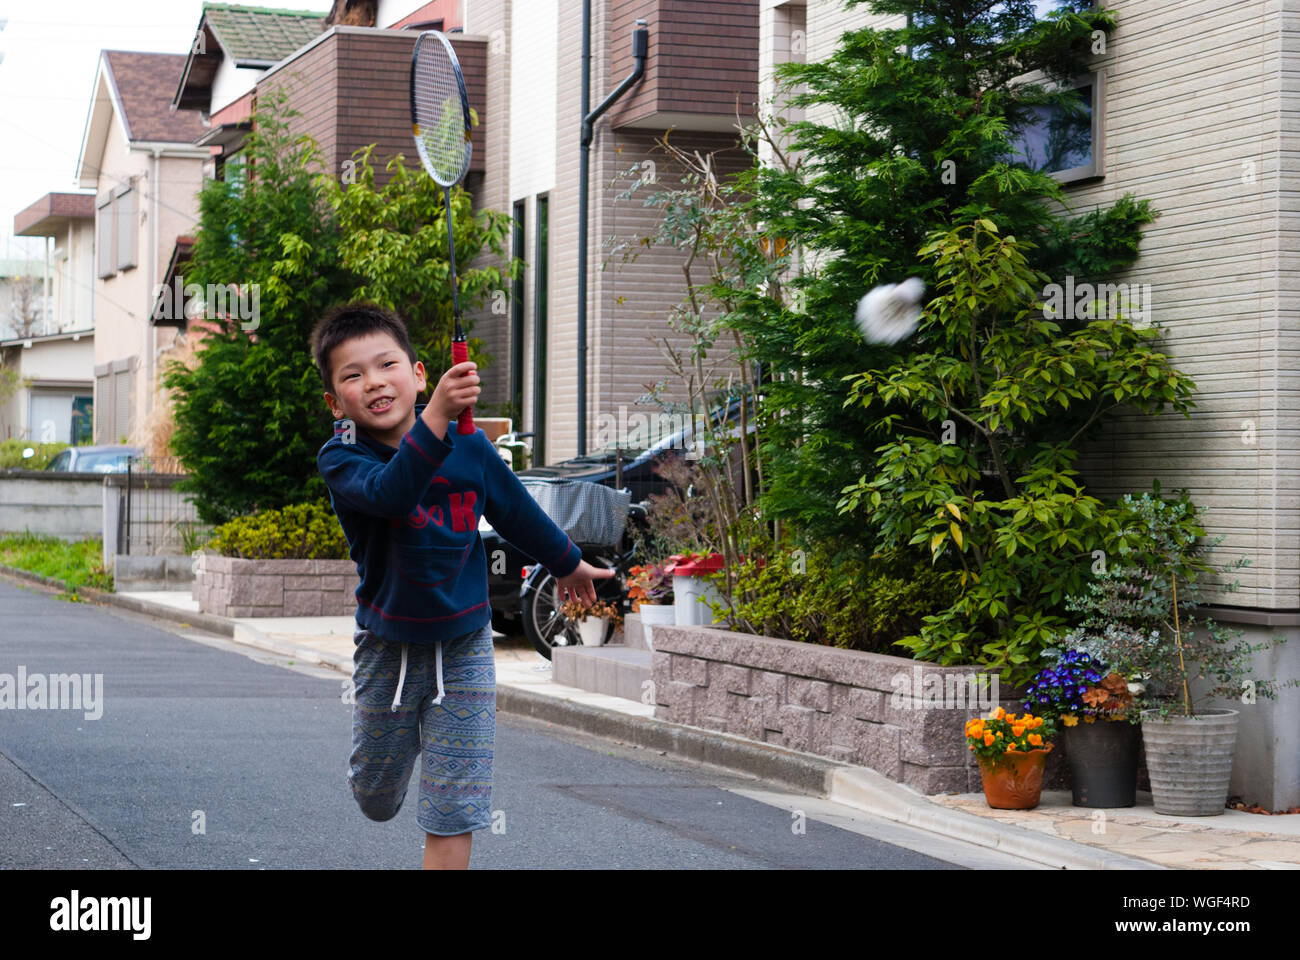 Boy jugar bádminton en la calle por casa Foto de stock